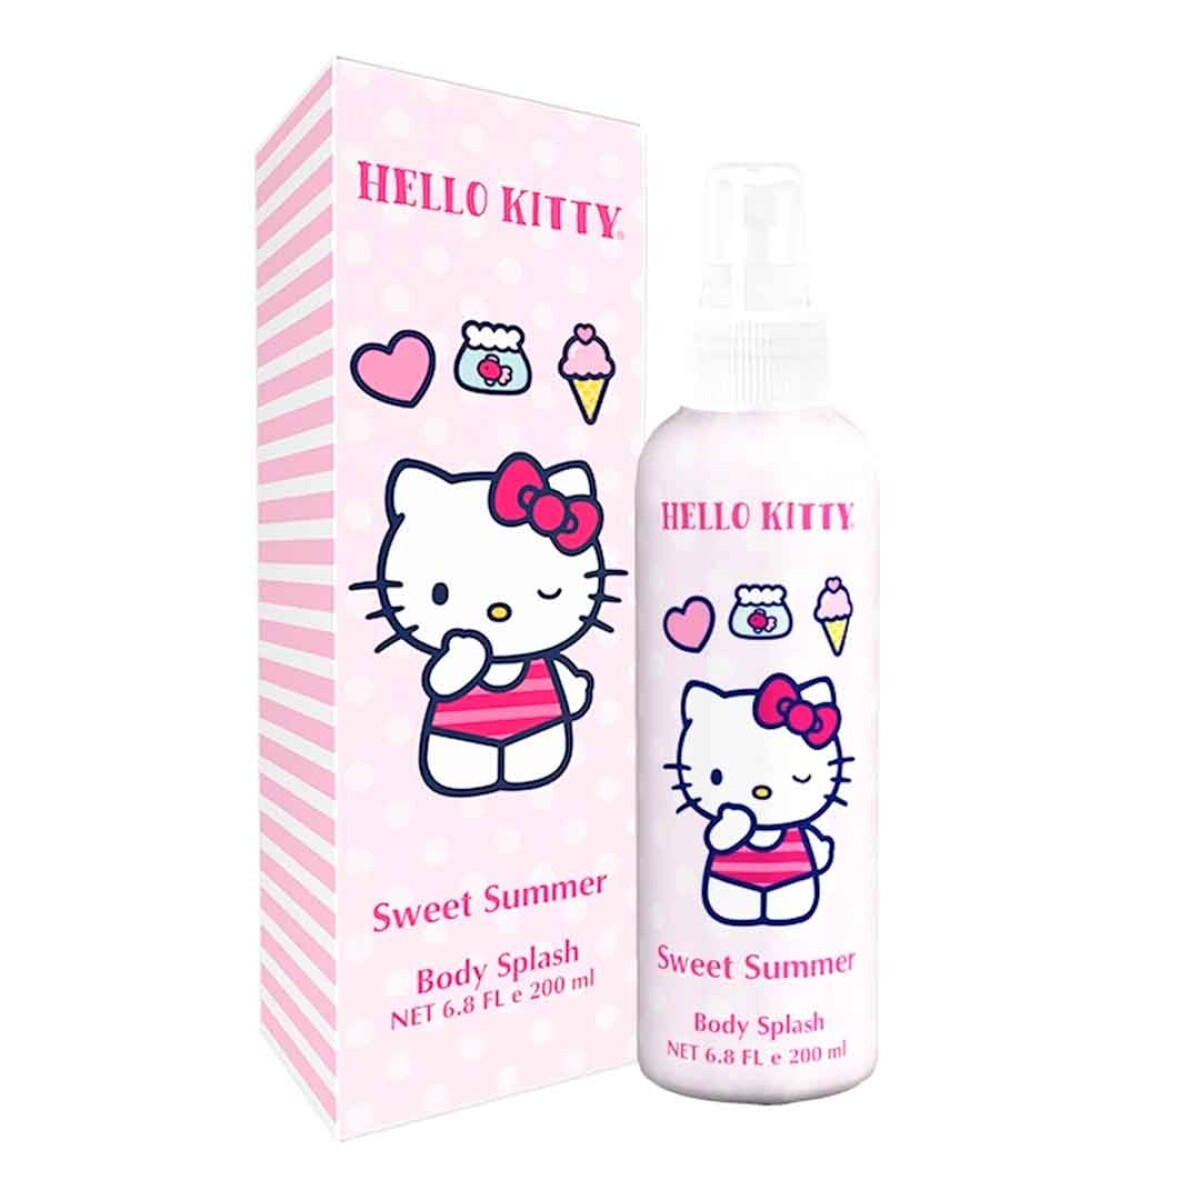 Body Splash Hello Kitty Sweet Summer 200ml - 001 